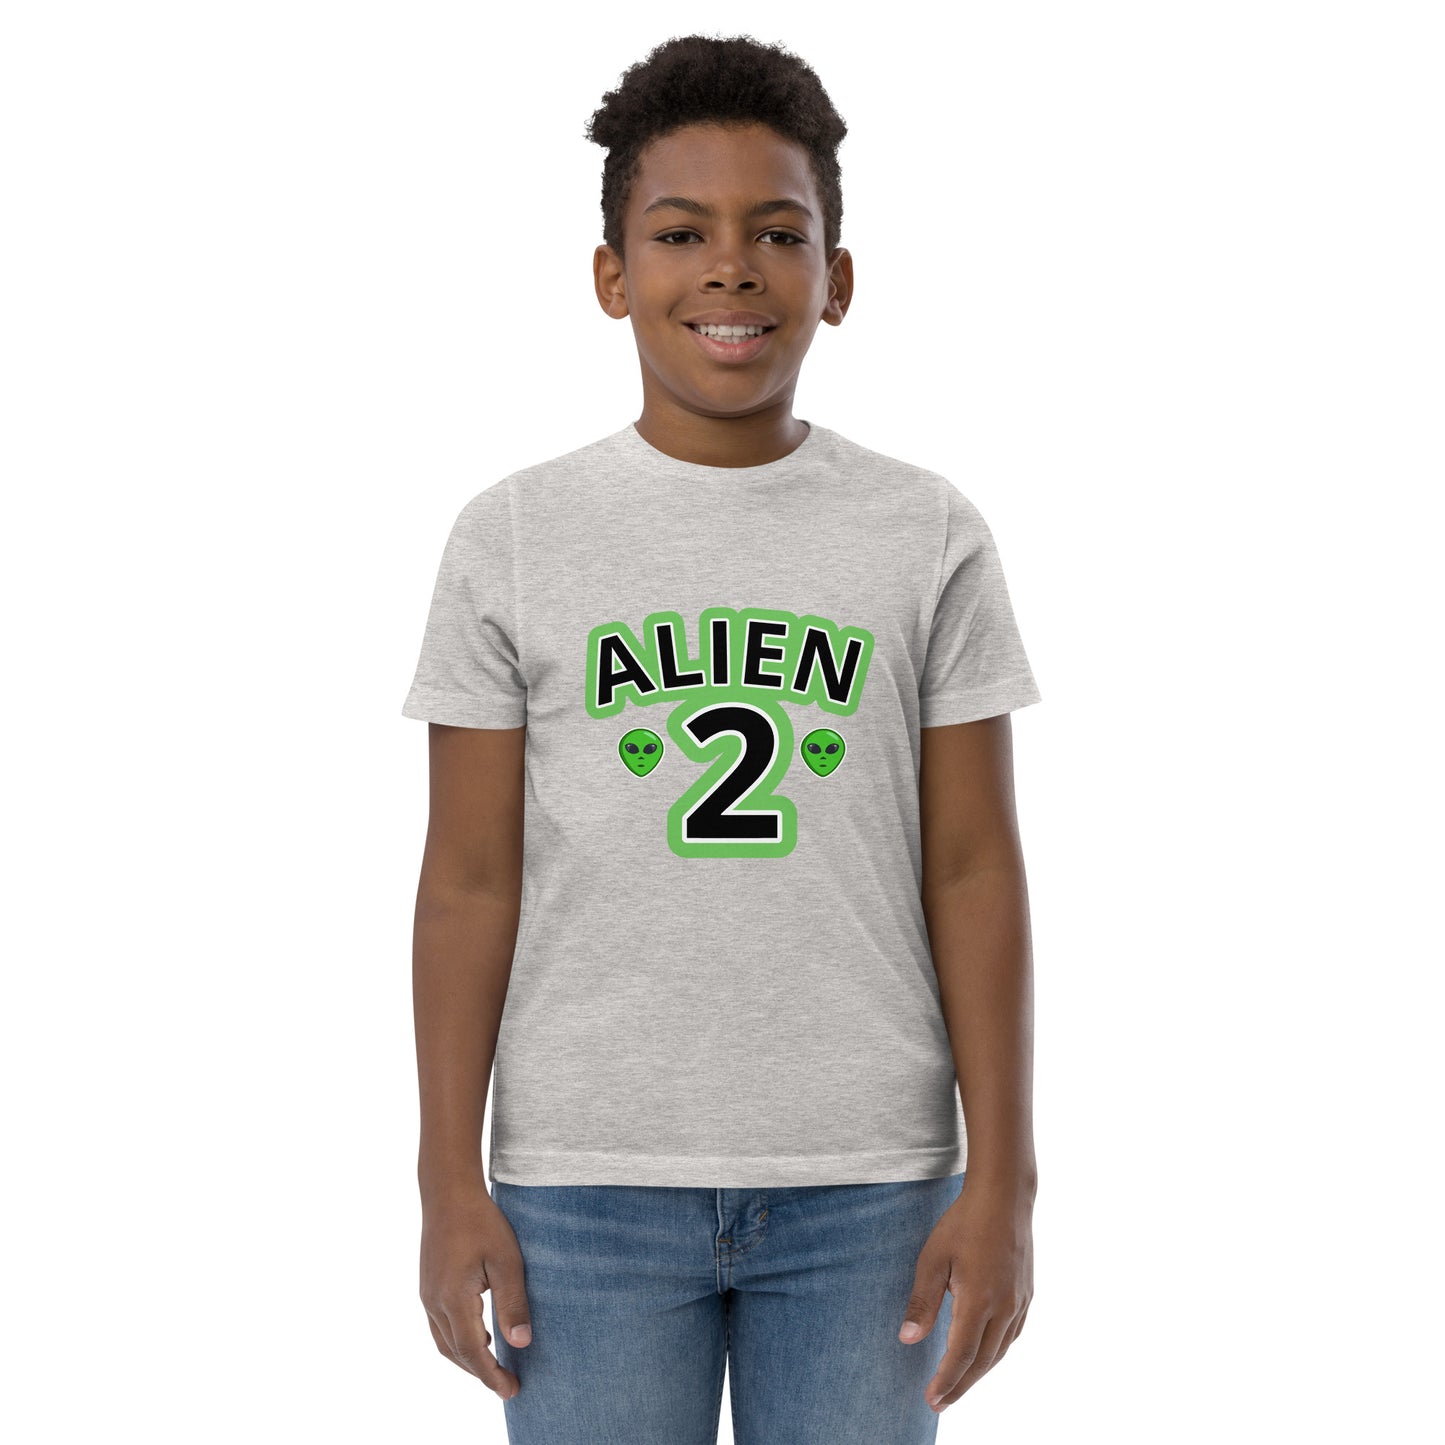 Alien t shirt